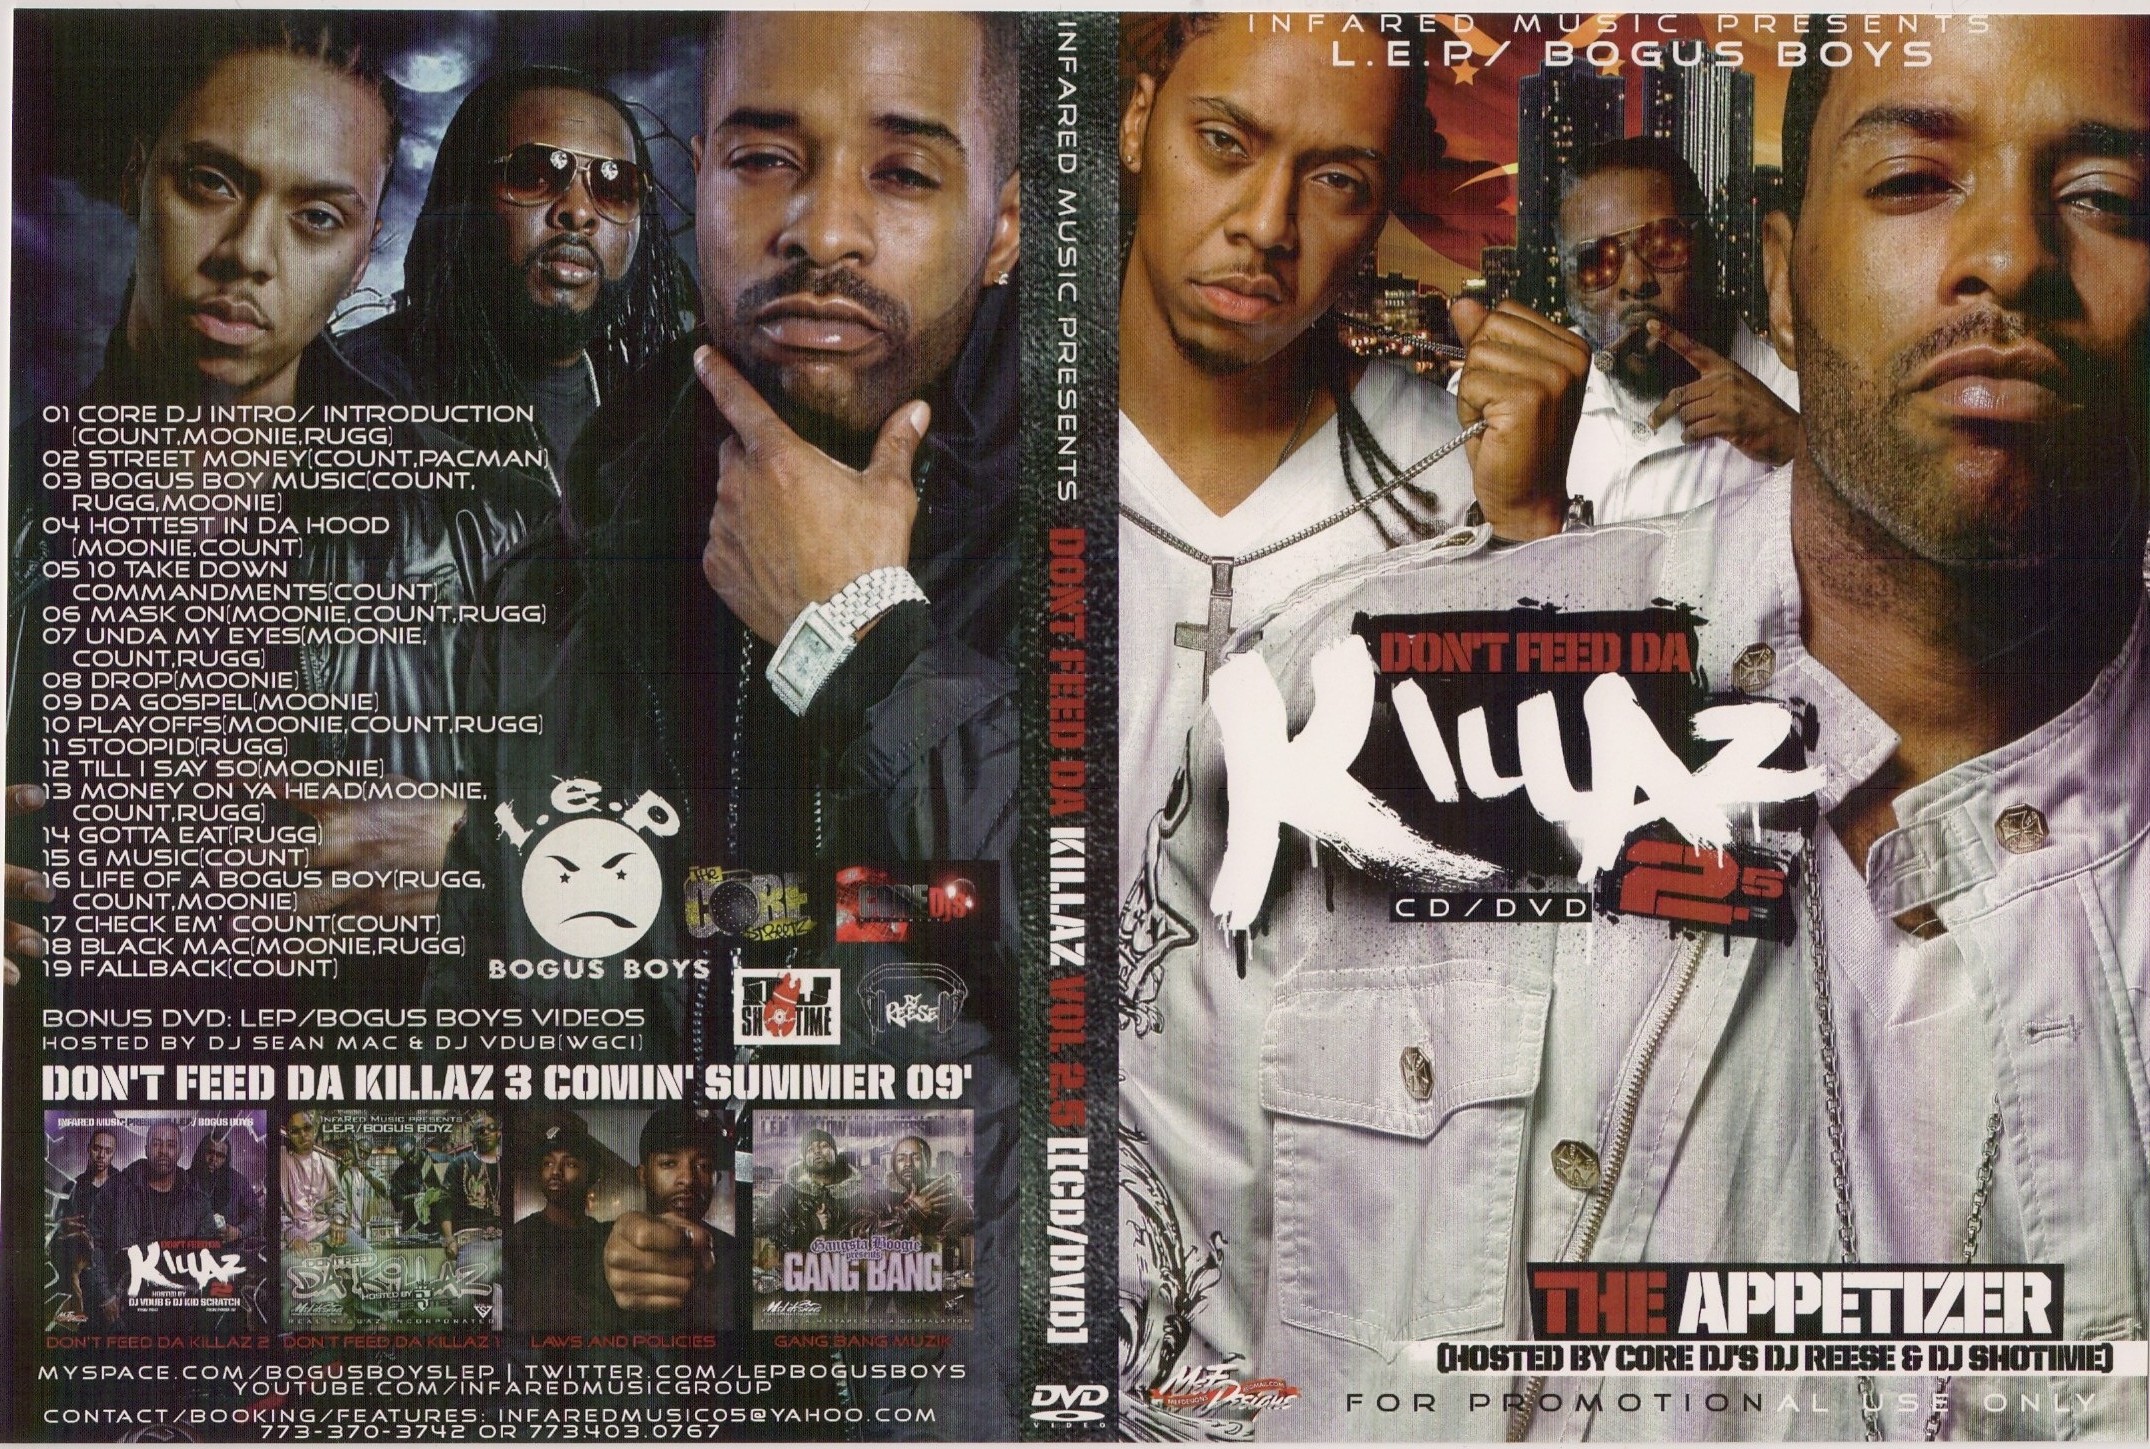 L.E.P. BOGUS BOYS Don't Feed Da Killaz Vol. 2.5: The Appetizer CD/DVD